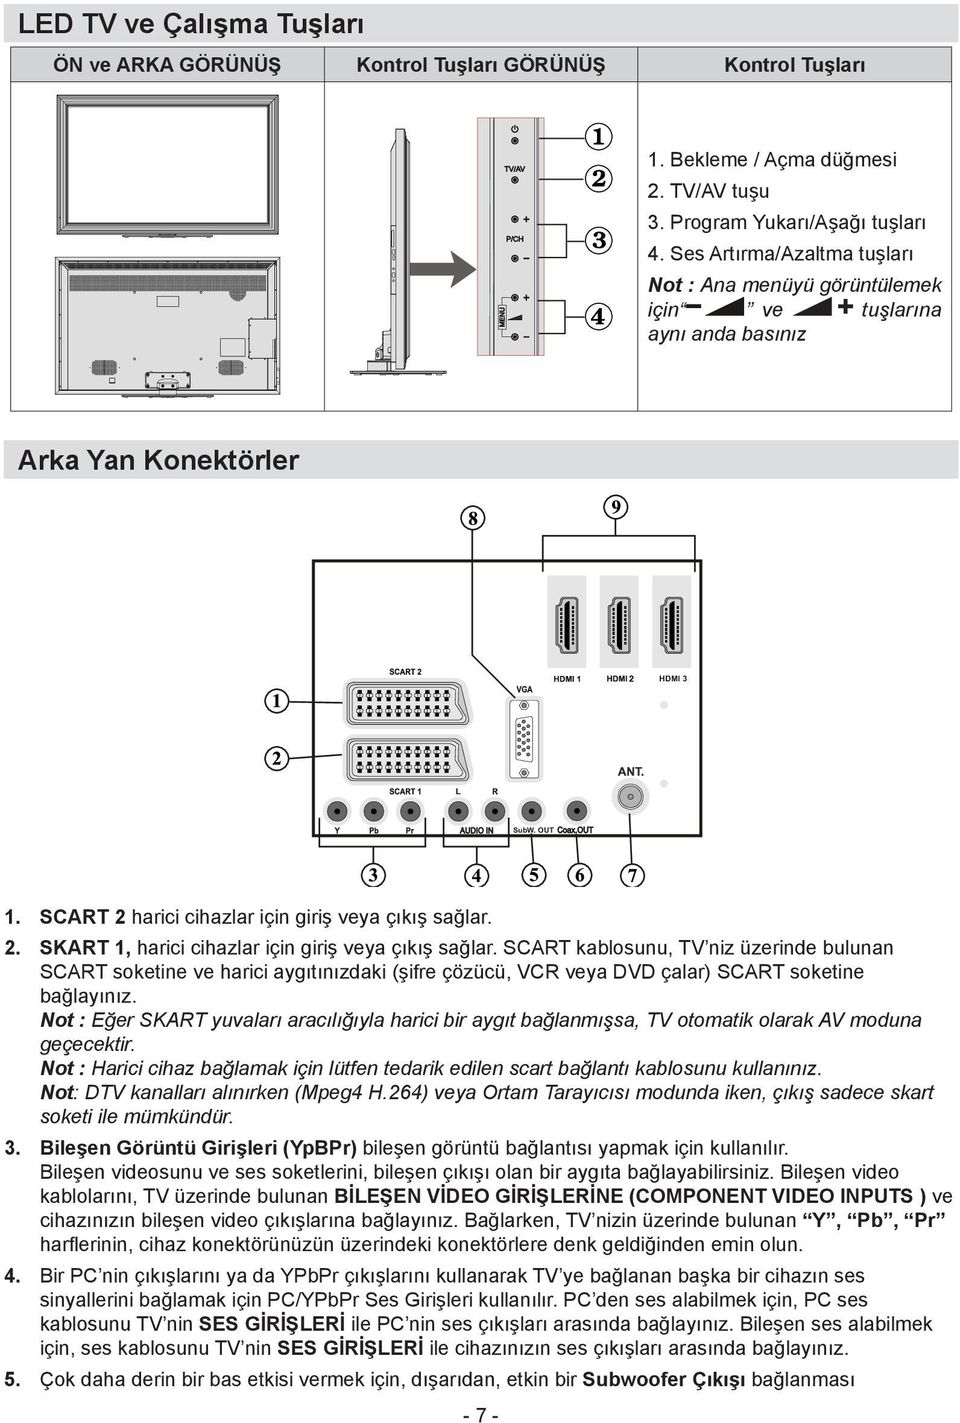 SCART kablosunu, TV niz üzerinde bulunan SCART soketine ve harici aygıtınızdaki (şifre çözücü, VCR veya DVD çalar) SCART soketine bağlayınız.